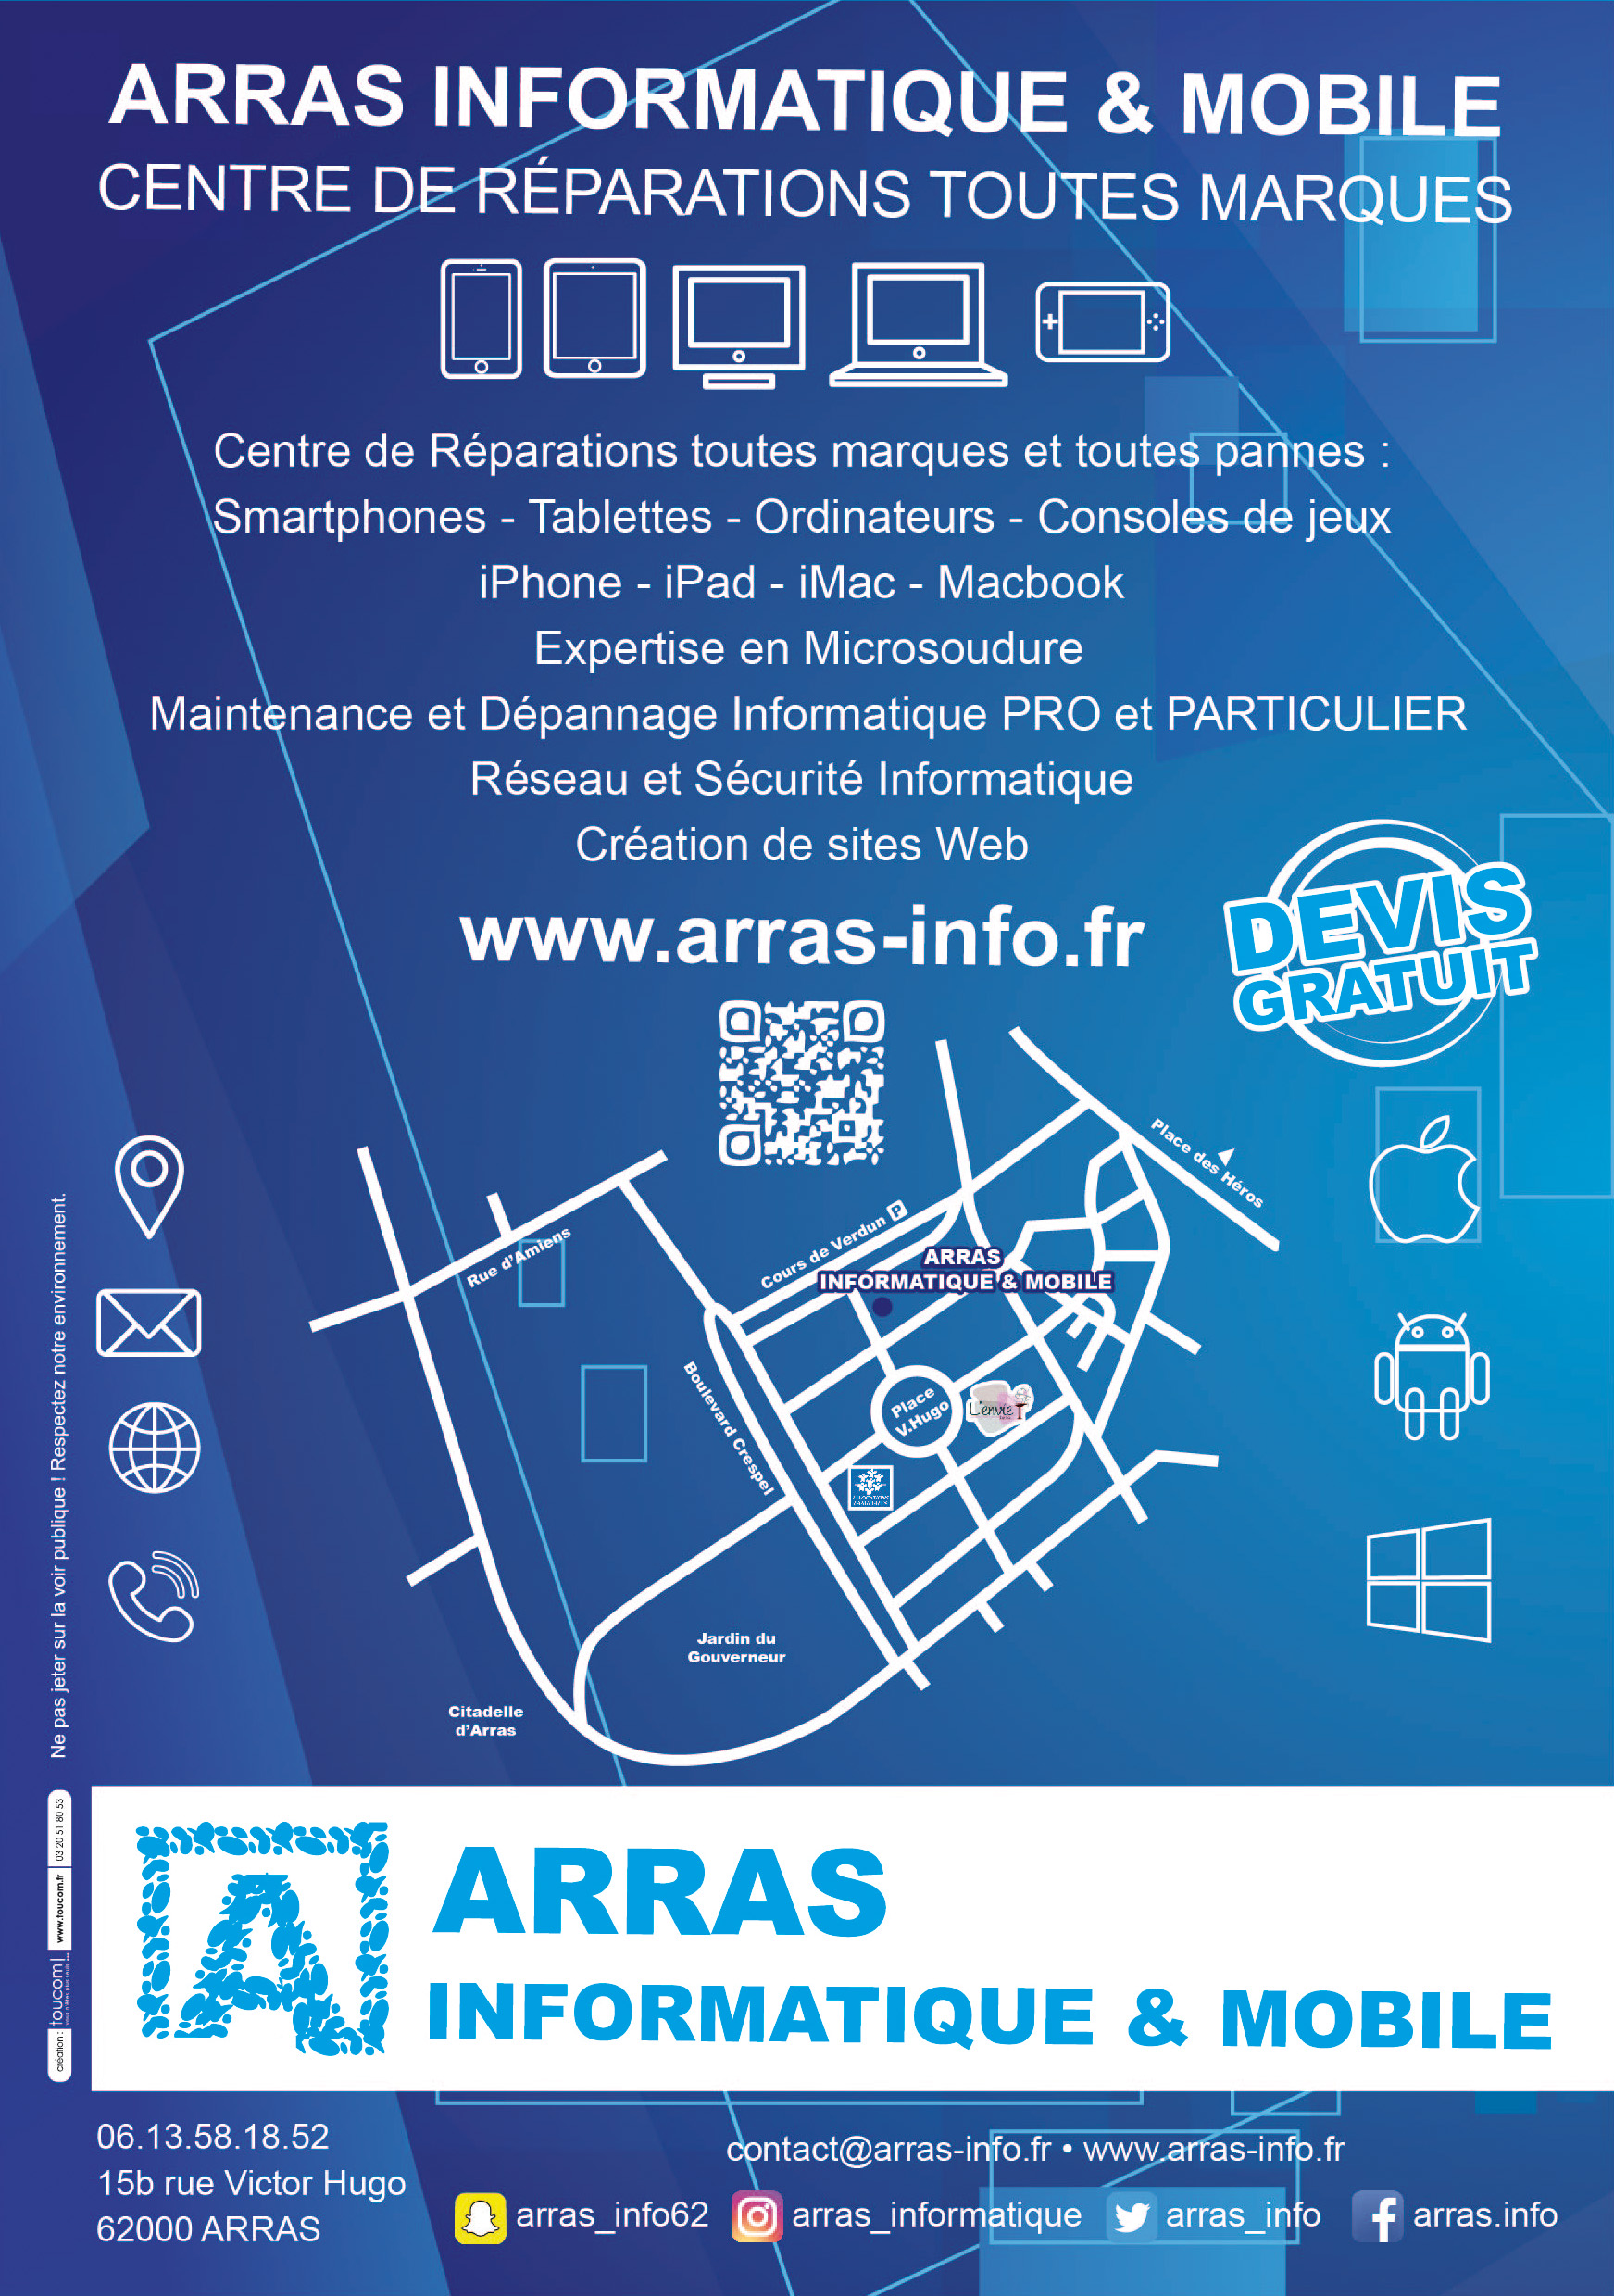 Arras Informatique & Mobile : Centre de Réparation Multimédia toutes marques - Téléphone / Tablette / Ordinateur / Mac / Console / Expertise Micro-Soudure / Informatique - Dépannage Pro et Particuliers